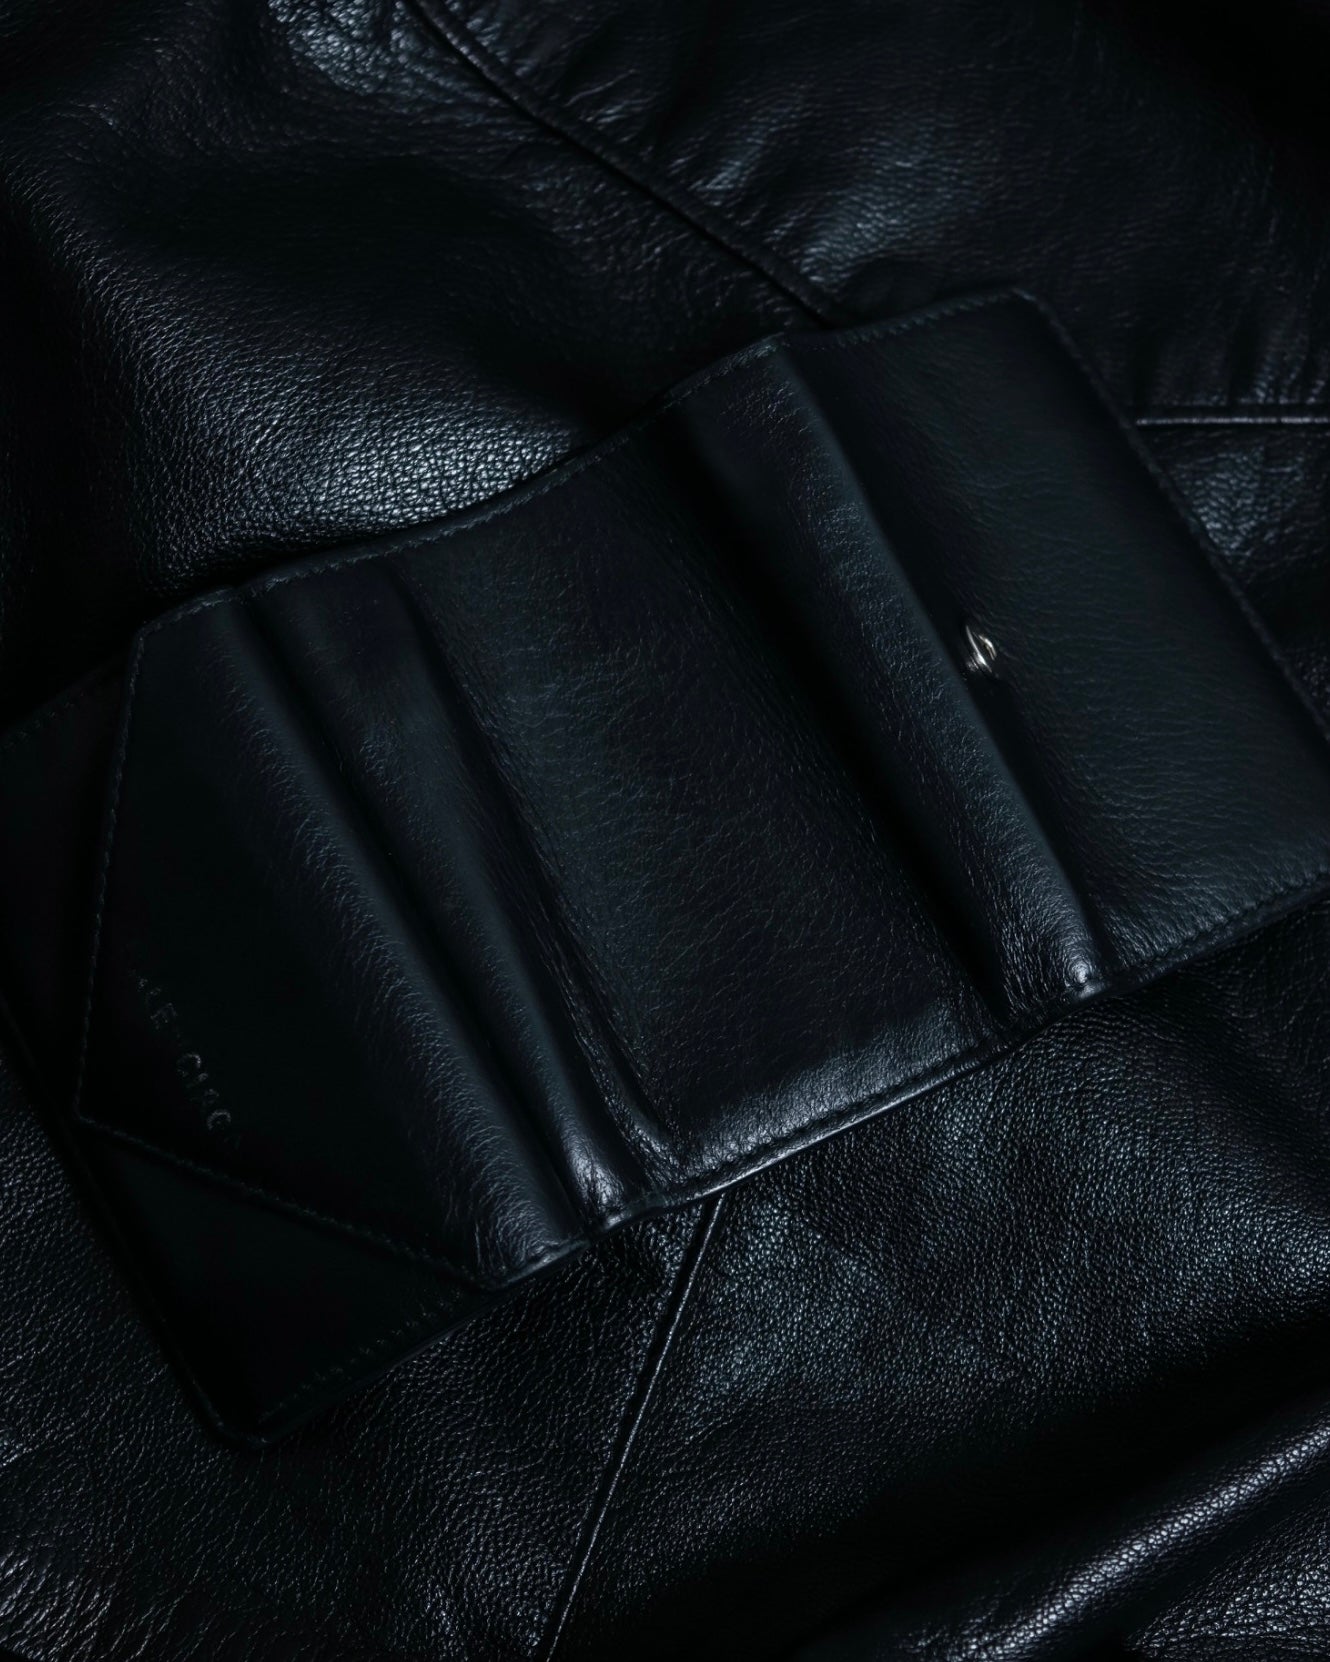 "BALENCIAGA" Leather compact wallet